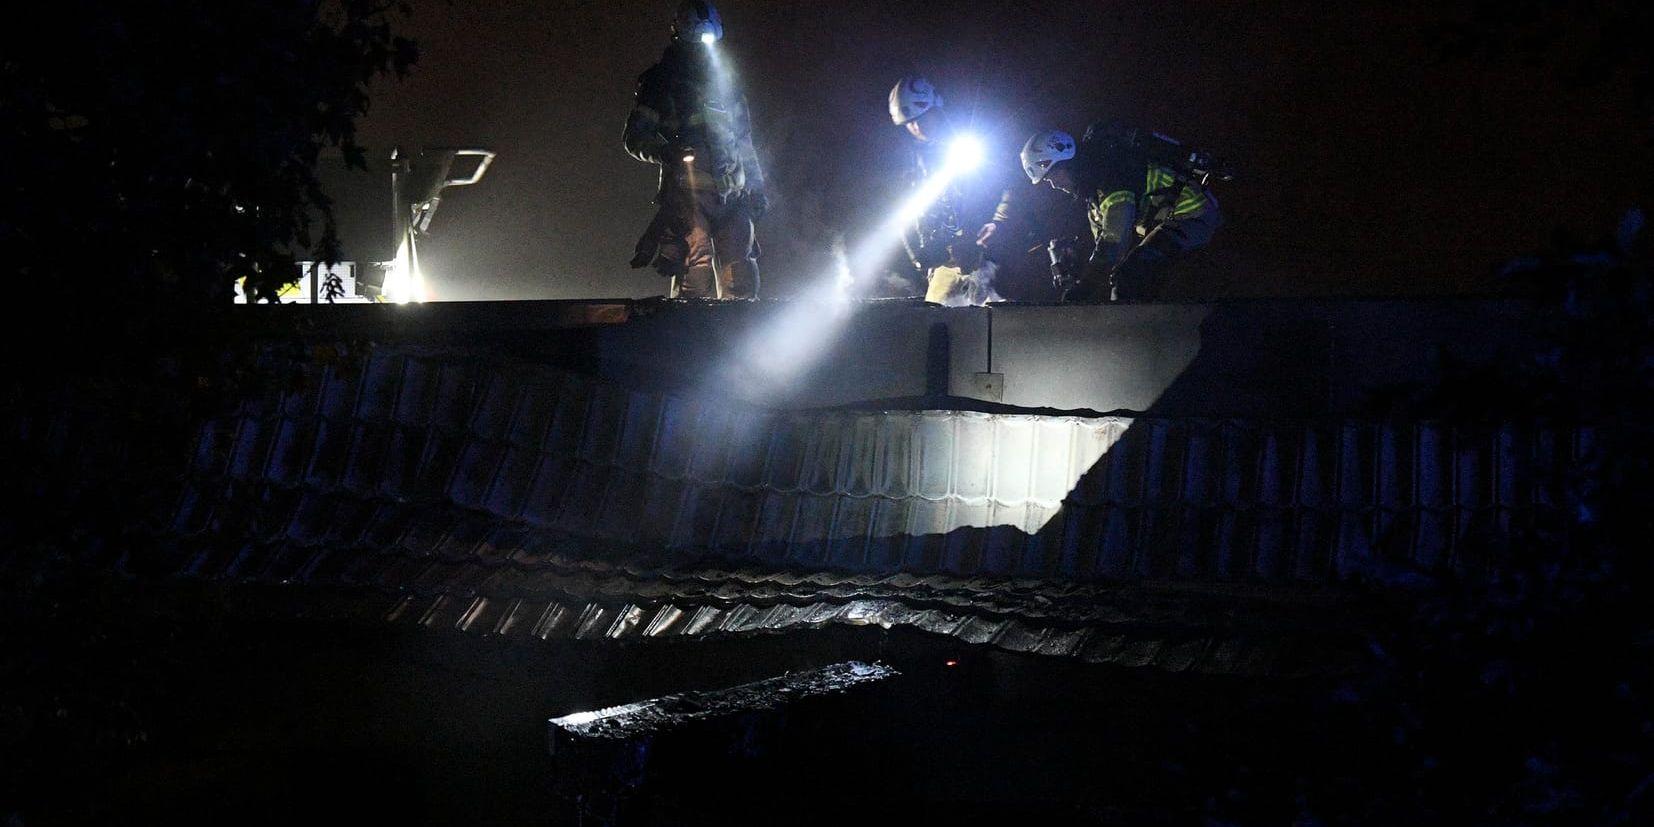 Räddningstjänst på plats på taket på ett gymnasium i Limhamn i Malmö som eldhärjades i natt.